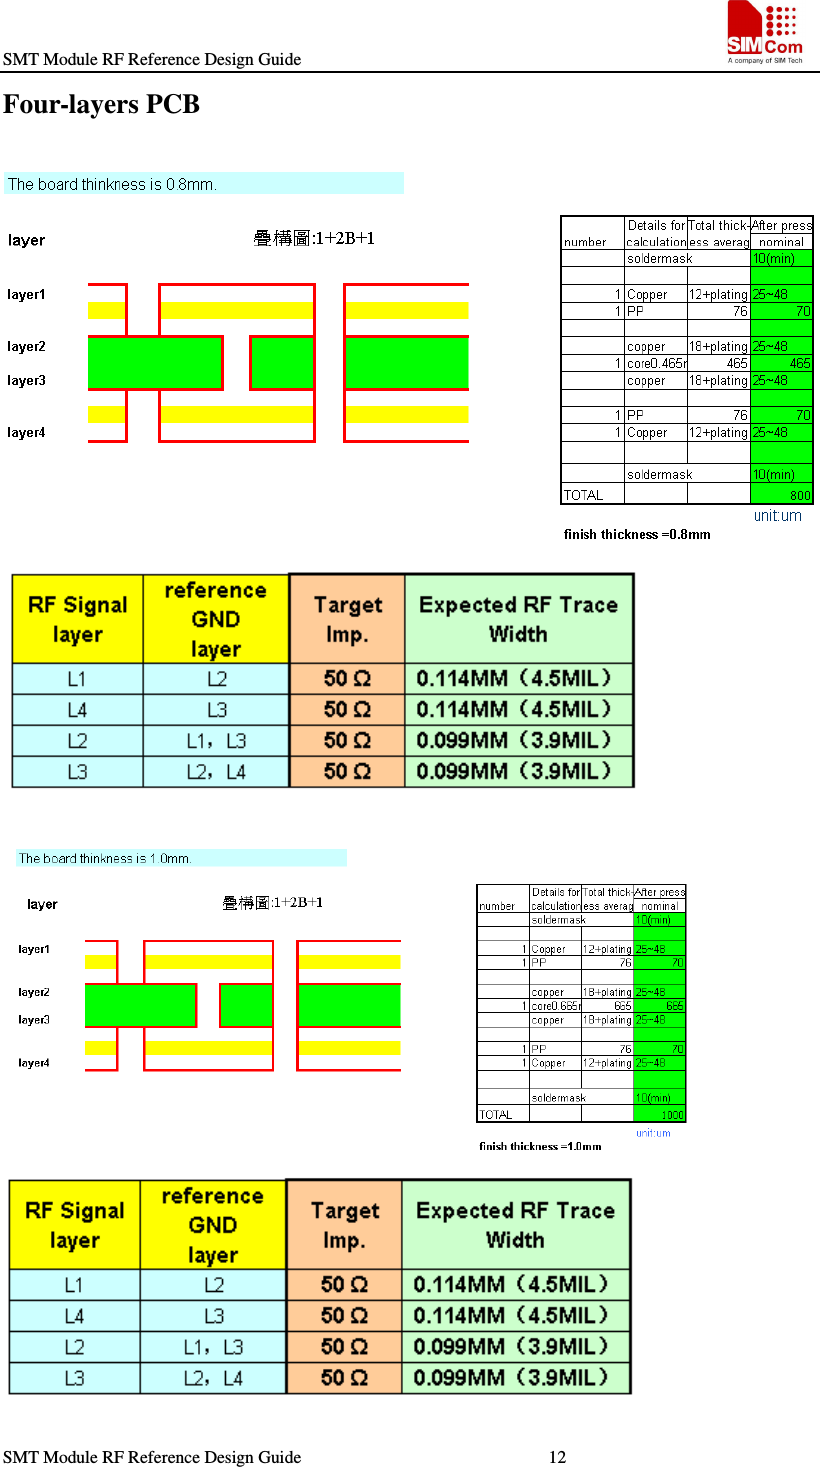 SMT Module RF Reference Design Guide                                                    SMT Module RF Reference Design Guide                                                        12                                                                   Four-layers PCB              